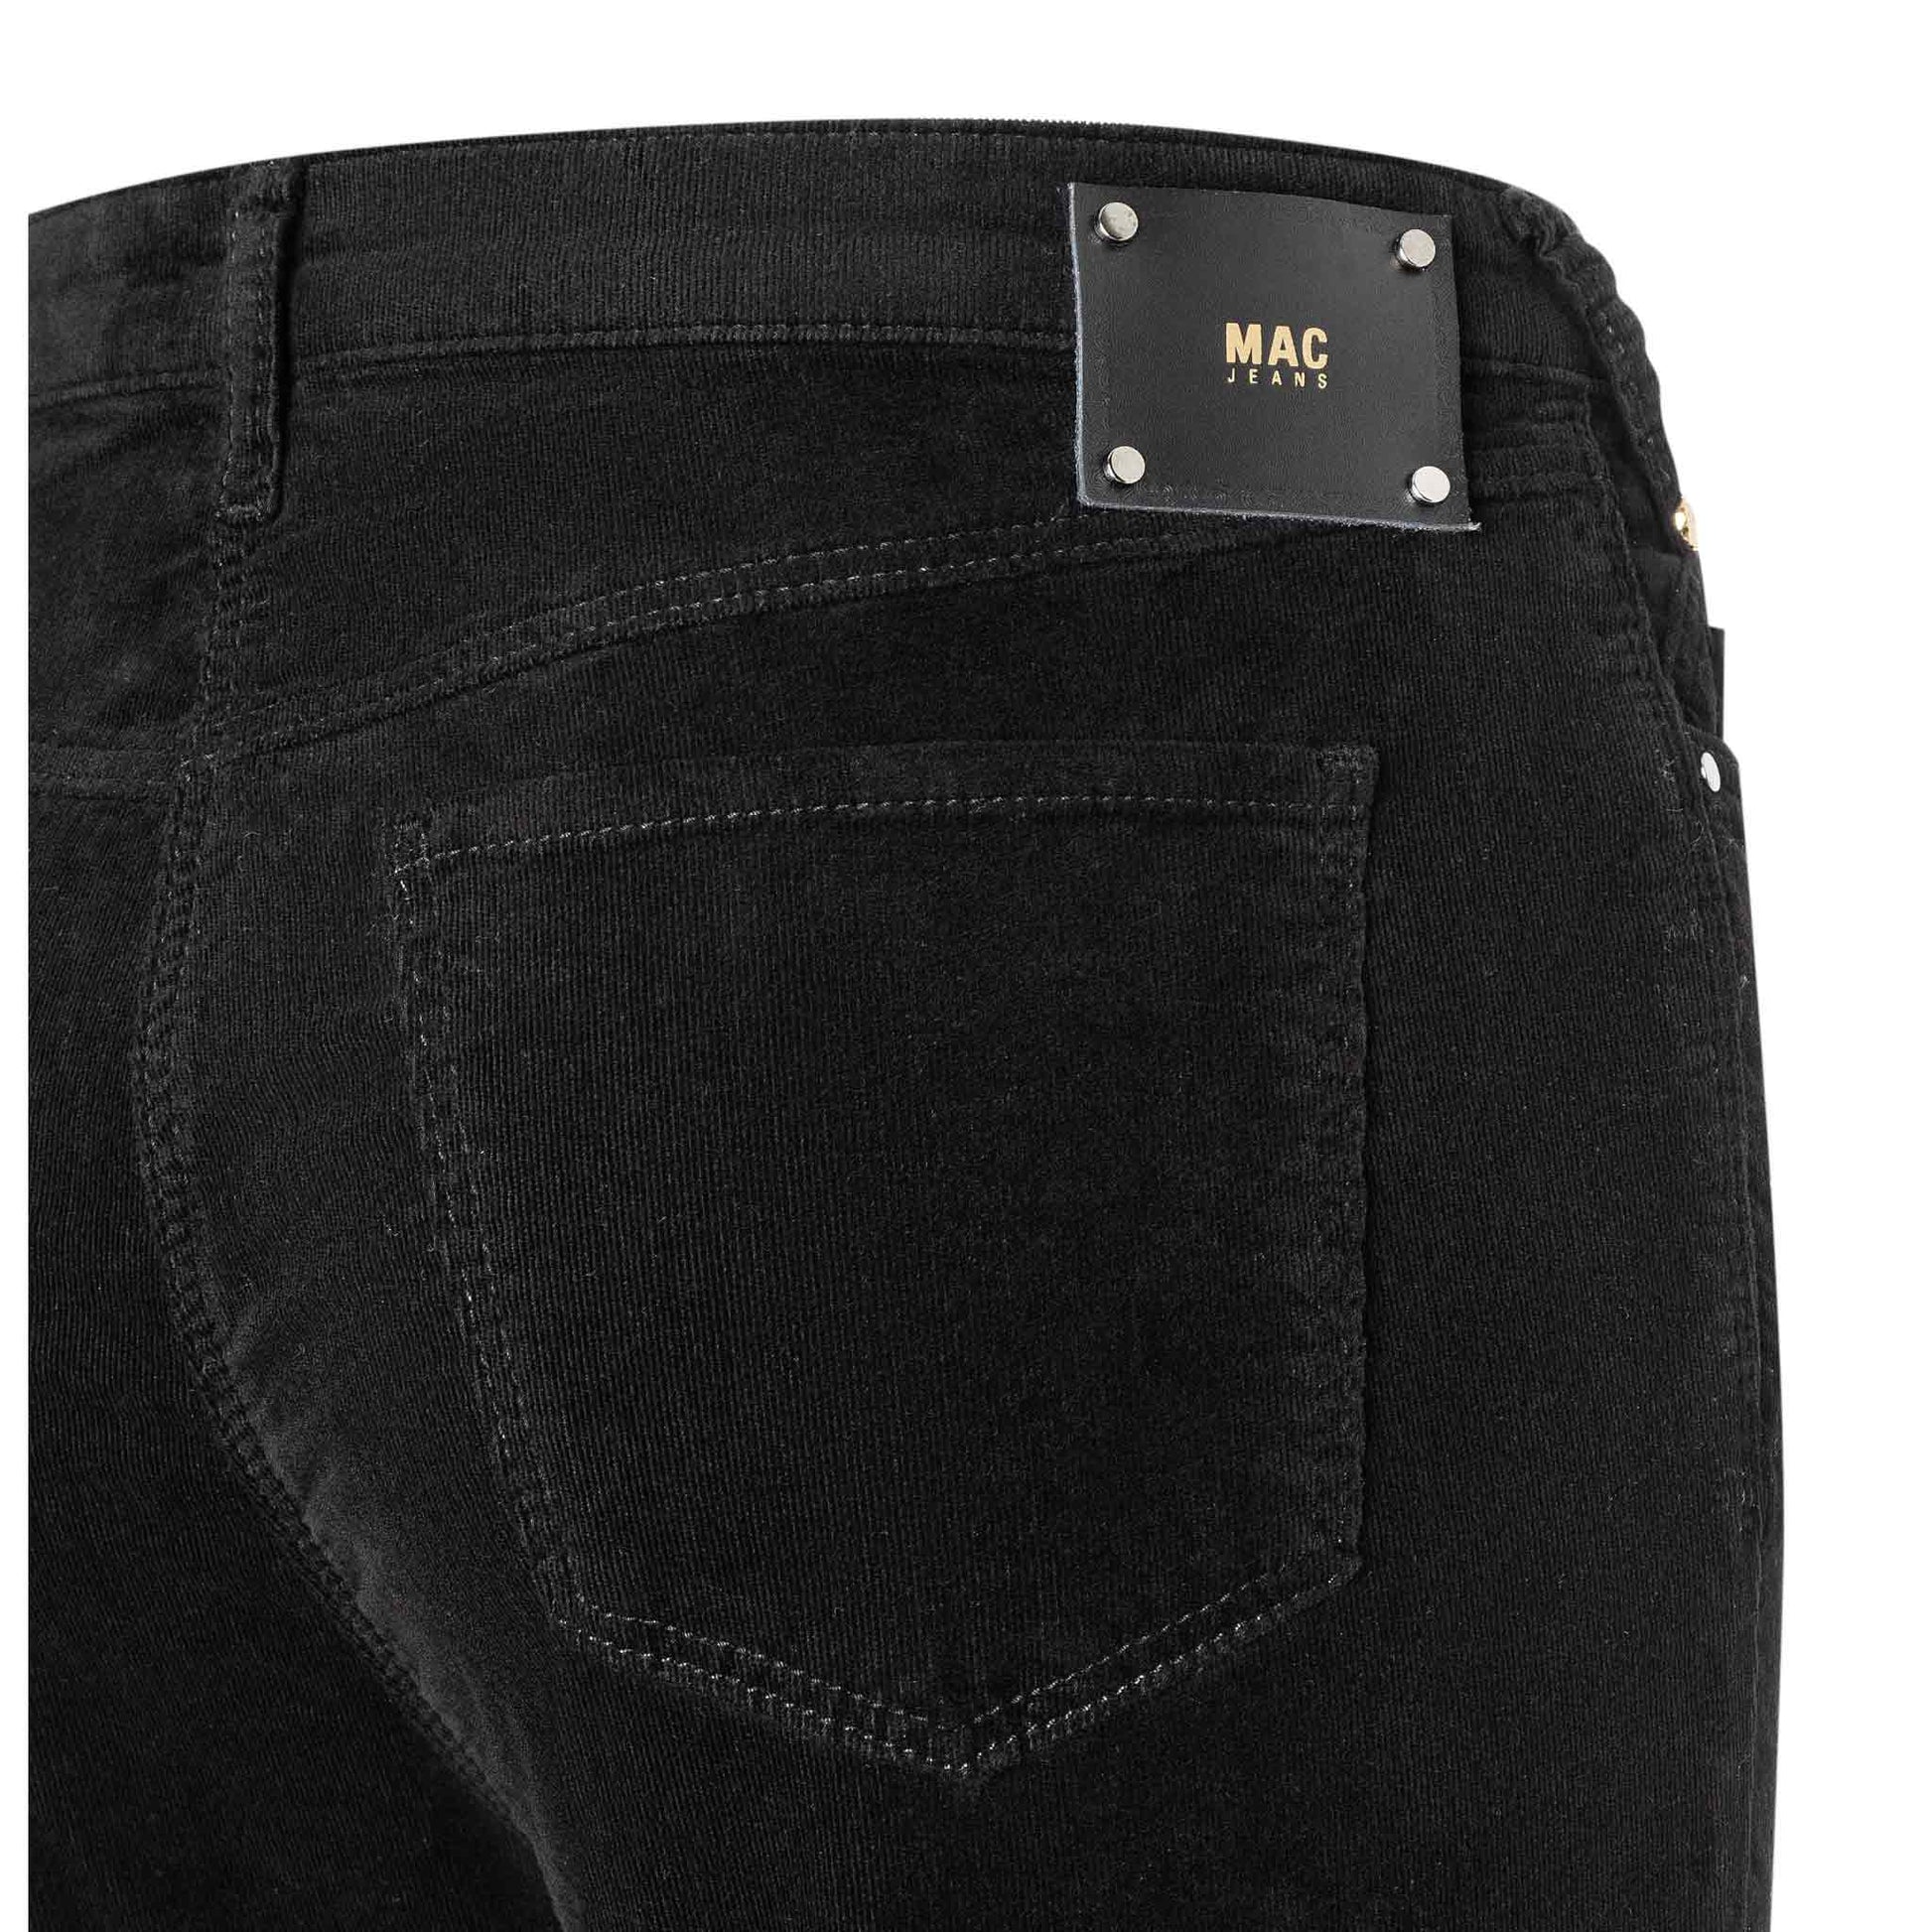 kleding lange vrouwen mac jeans rib boot zwart